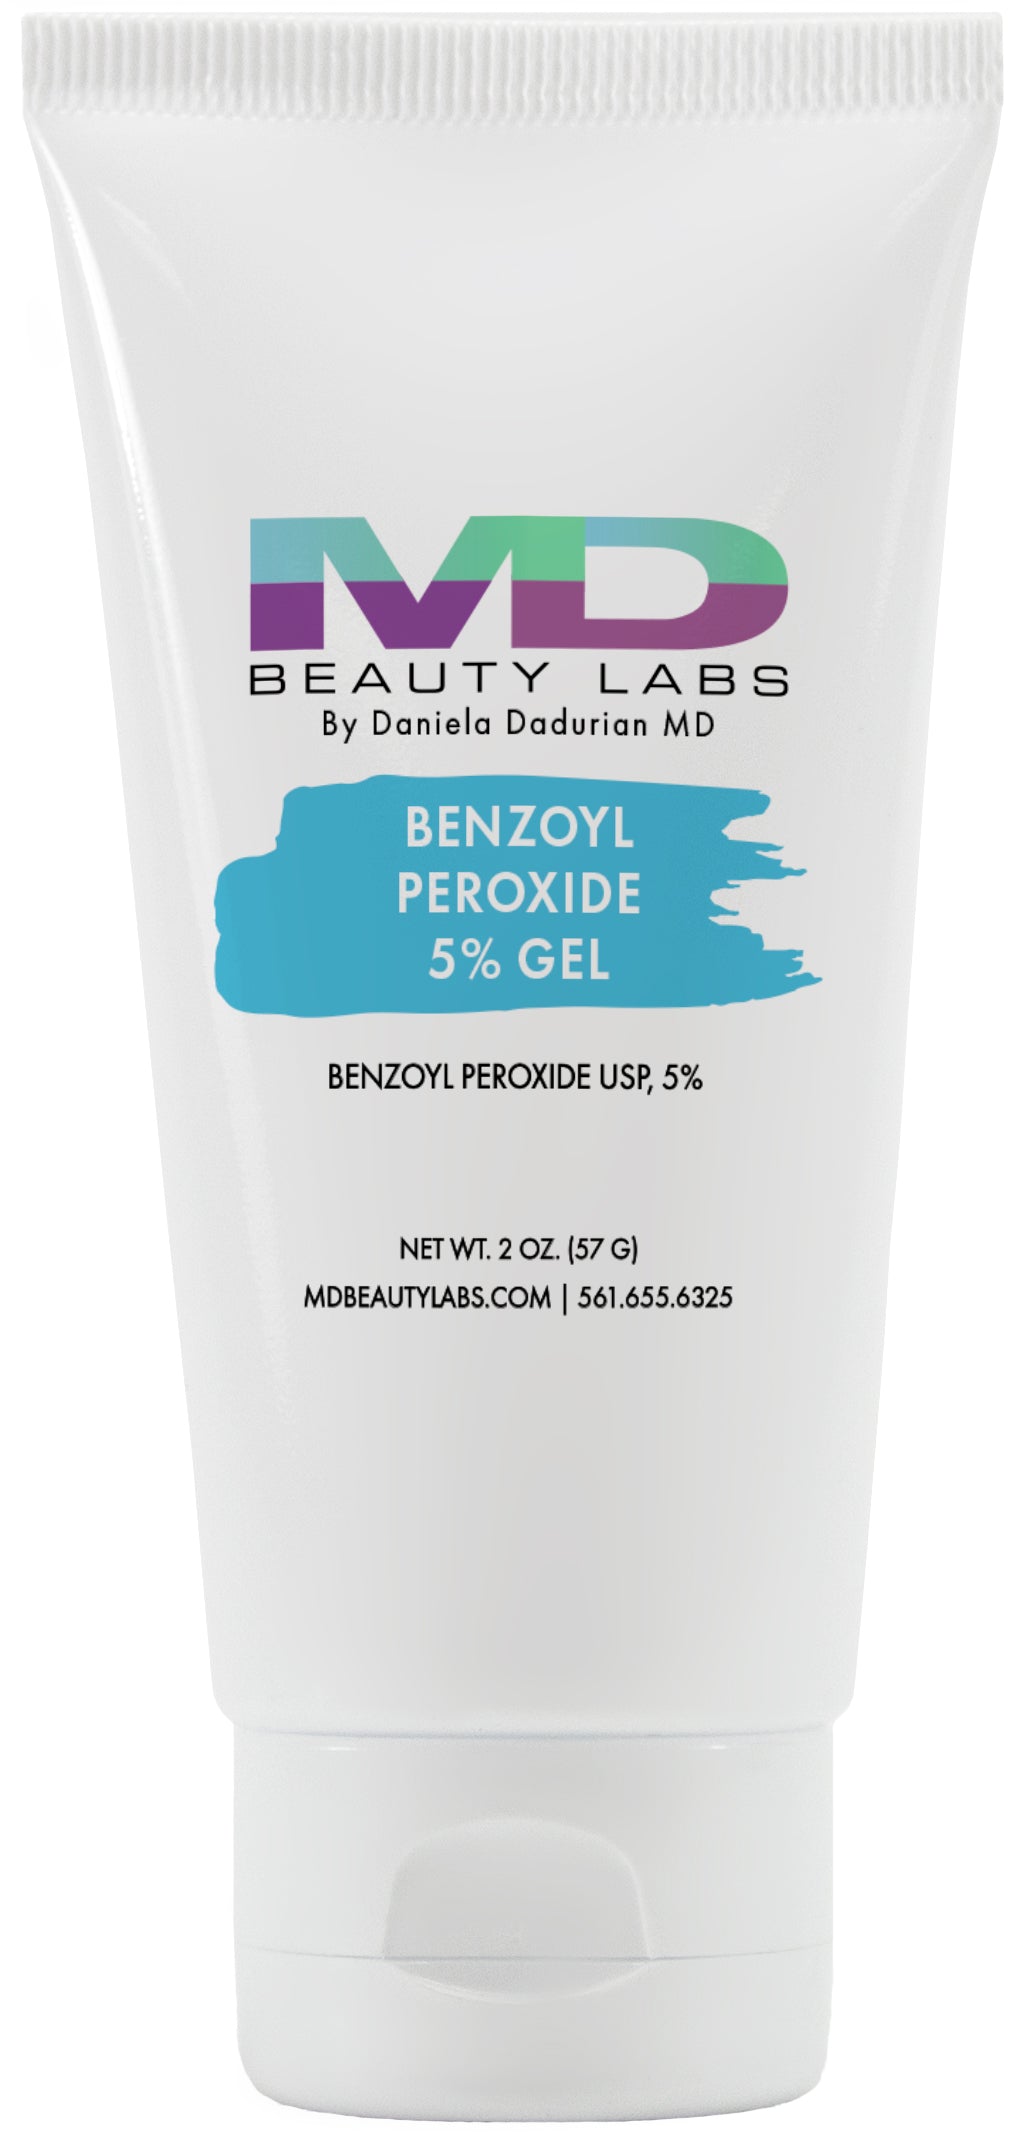 Benzoyl Peroxide 5% Gel